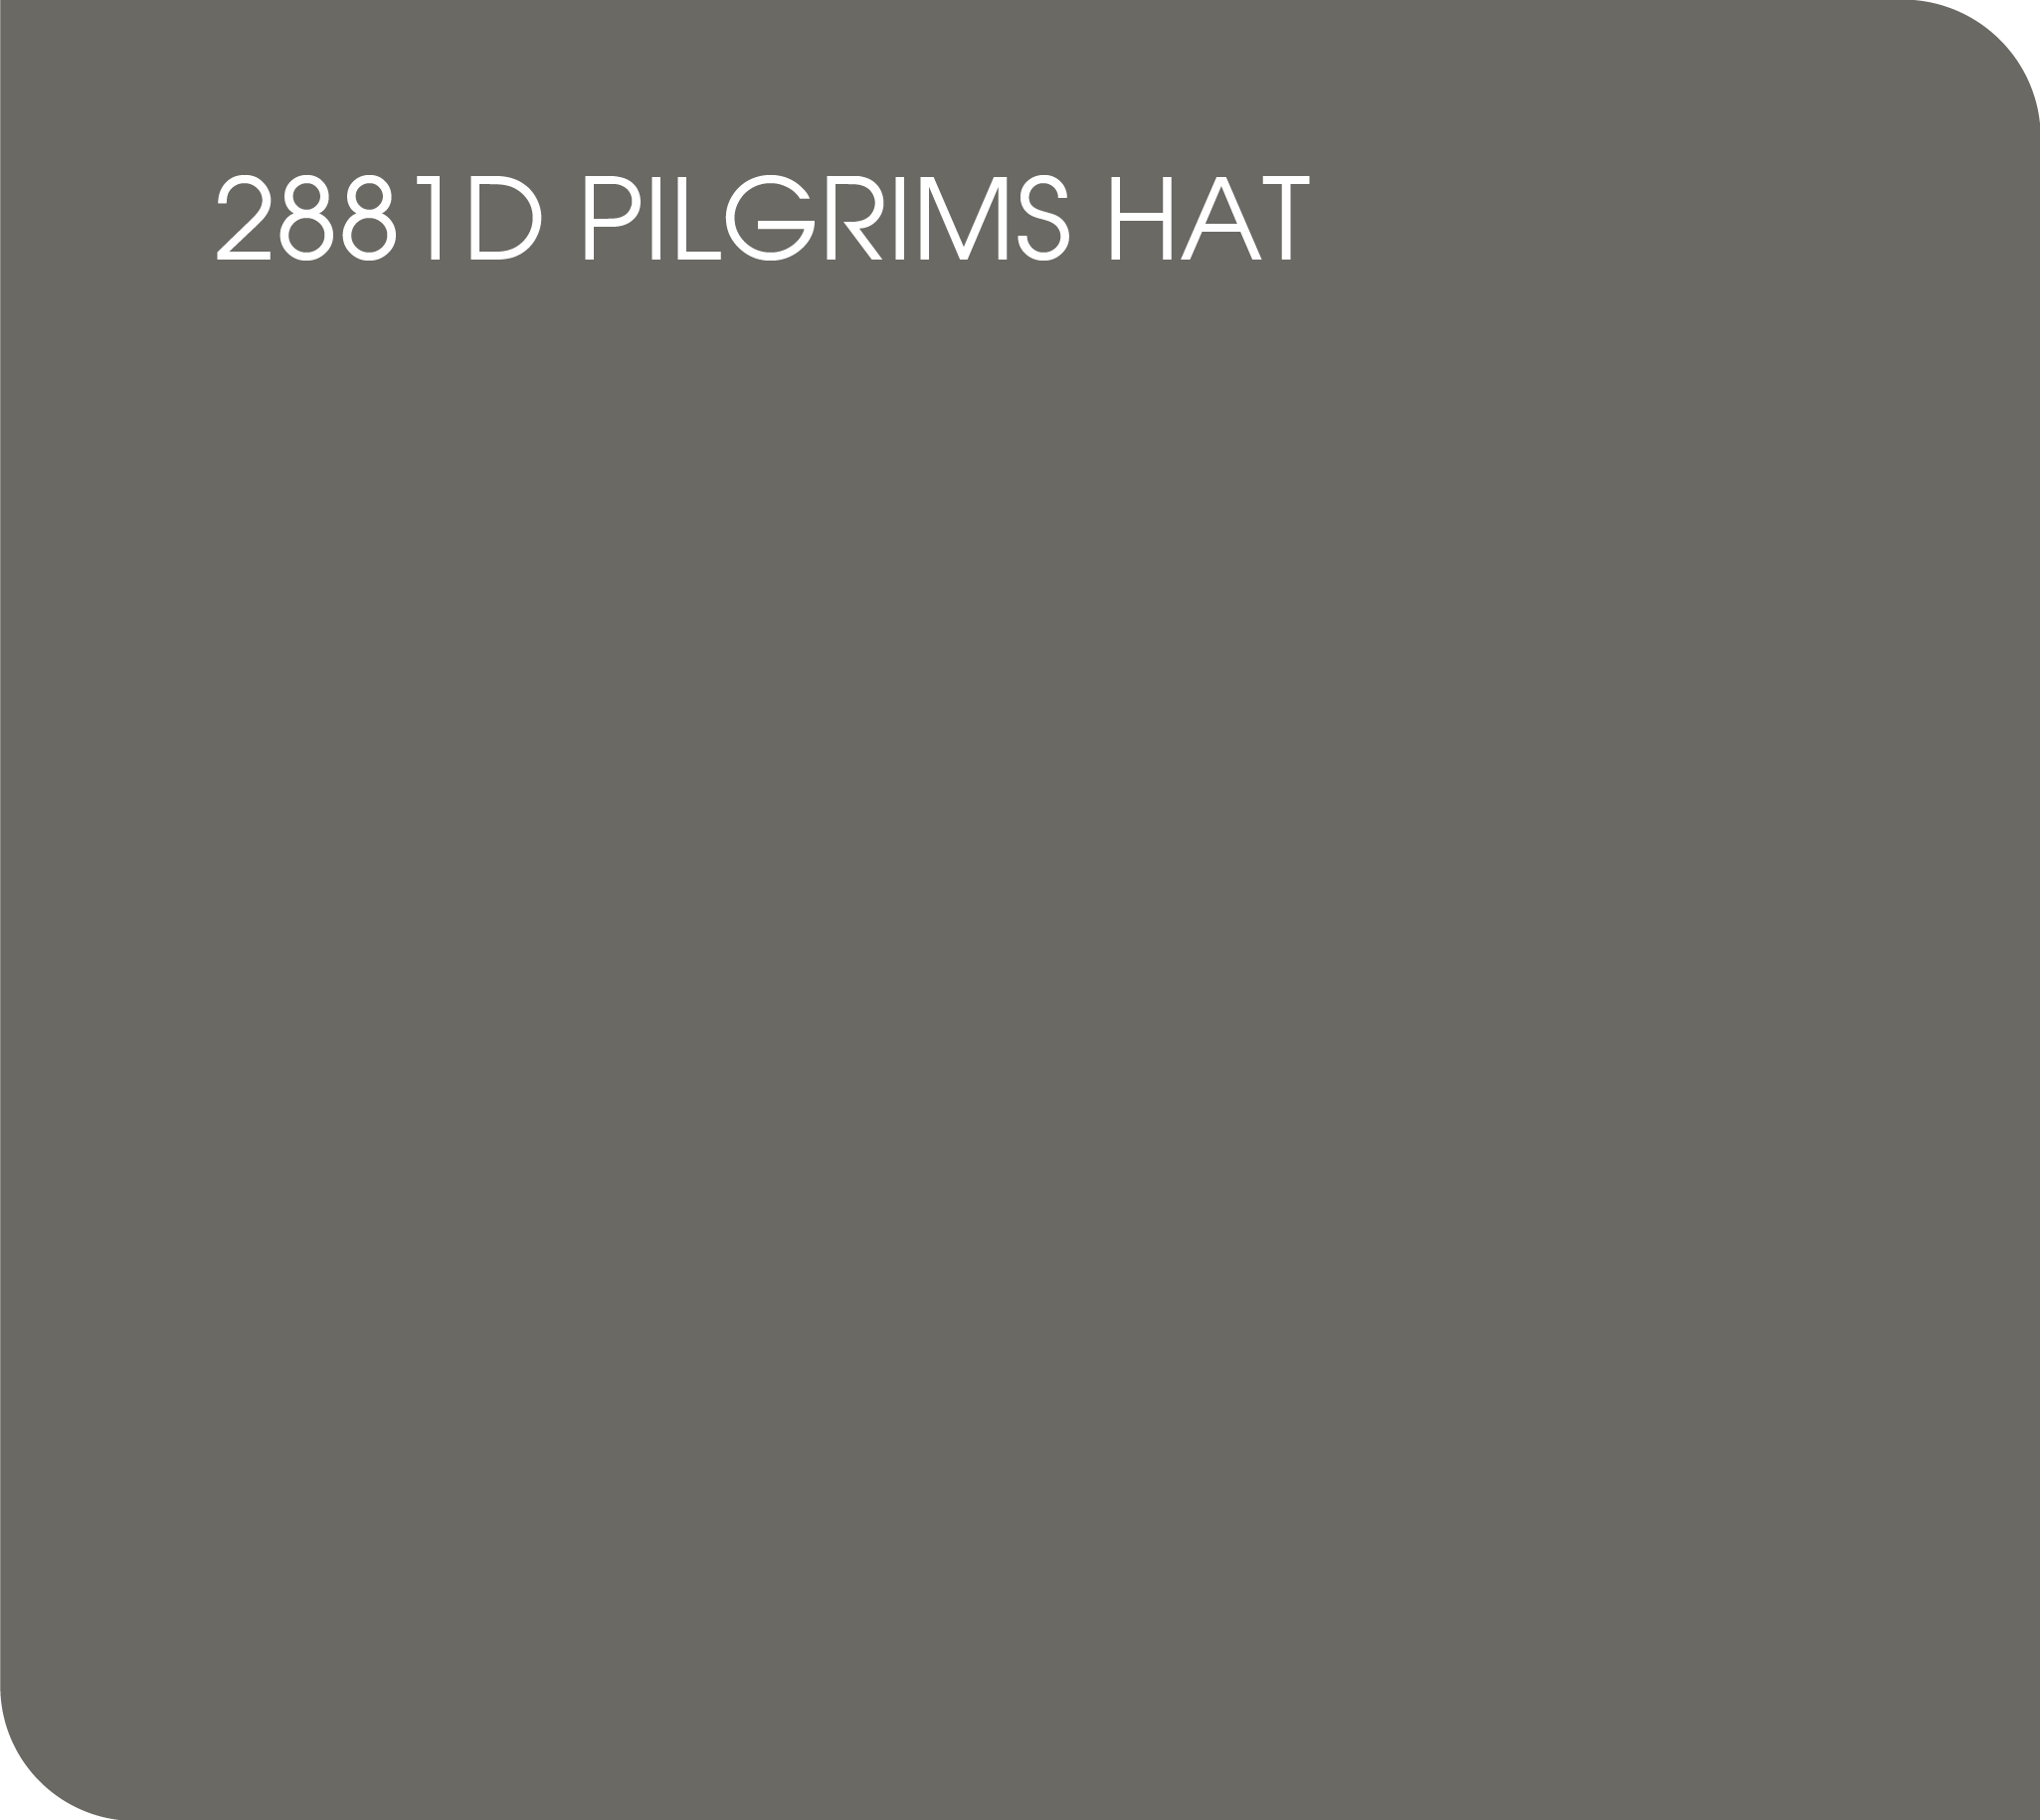 pilgrims 2881D